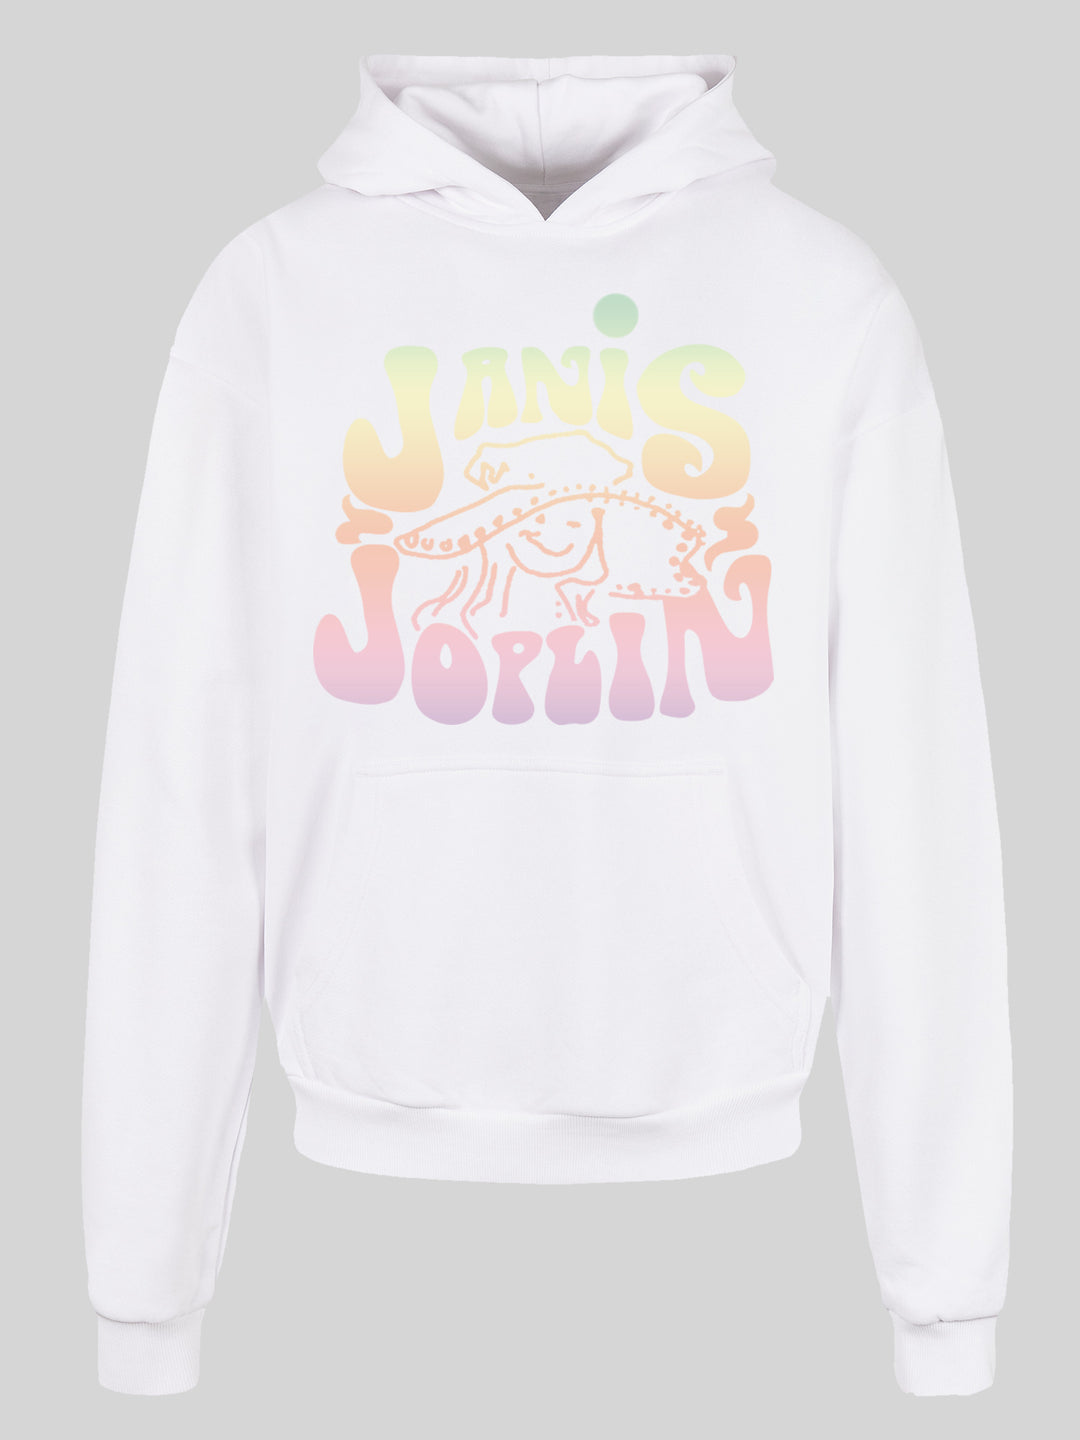 Janis Joplin Pastel Logo + with Ultra Heavy Hoody